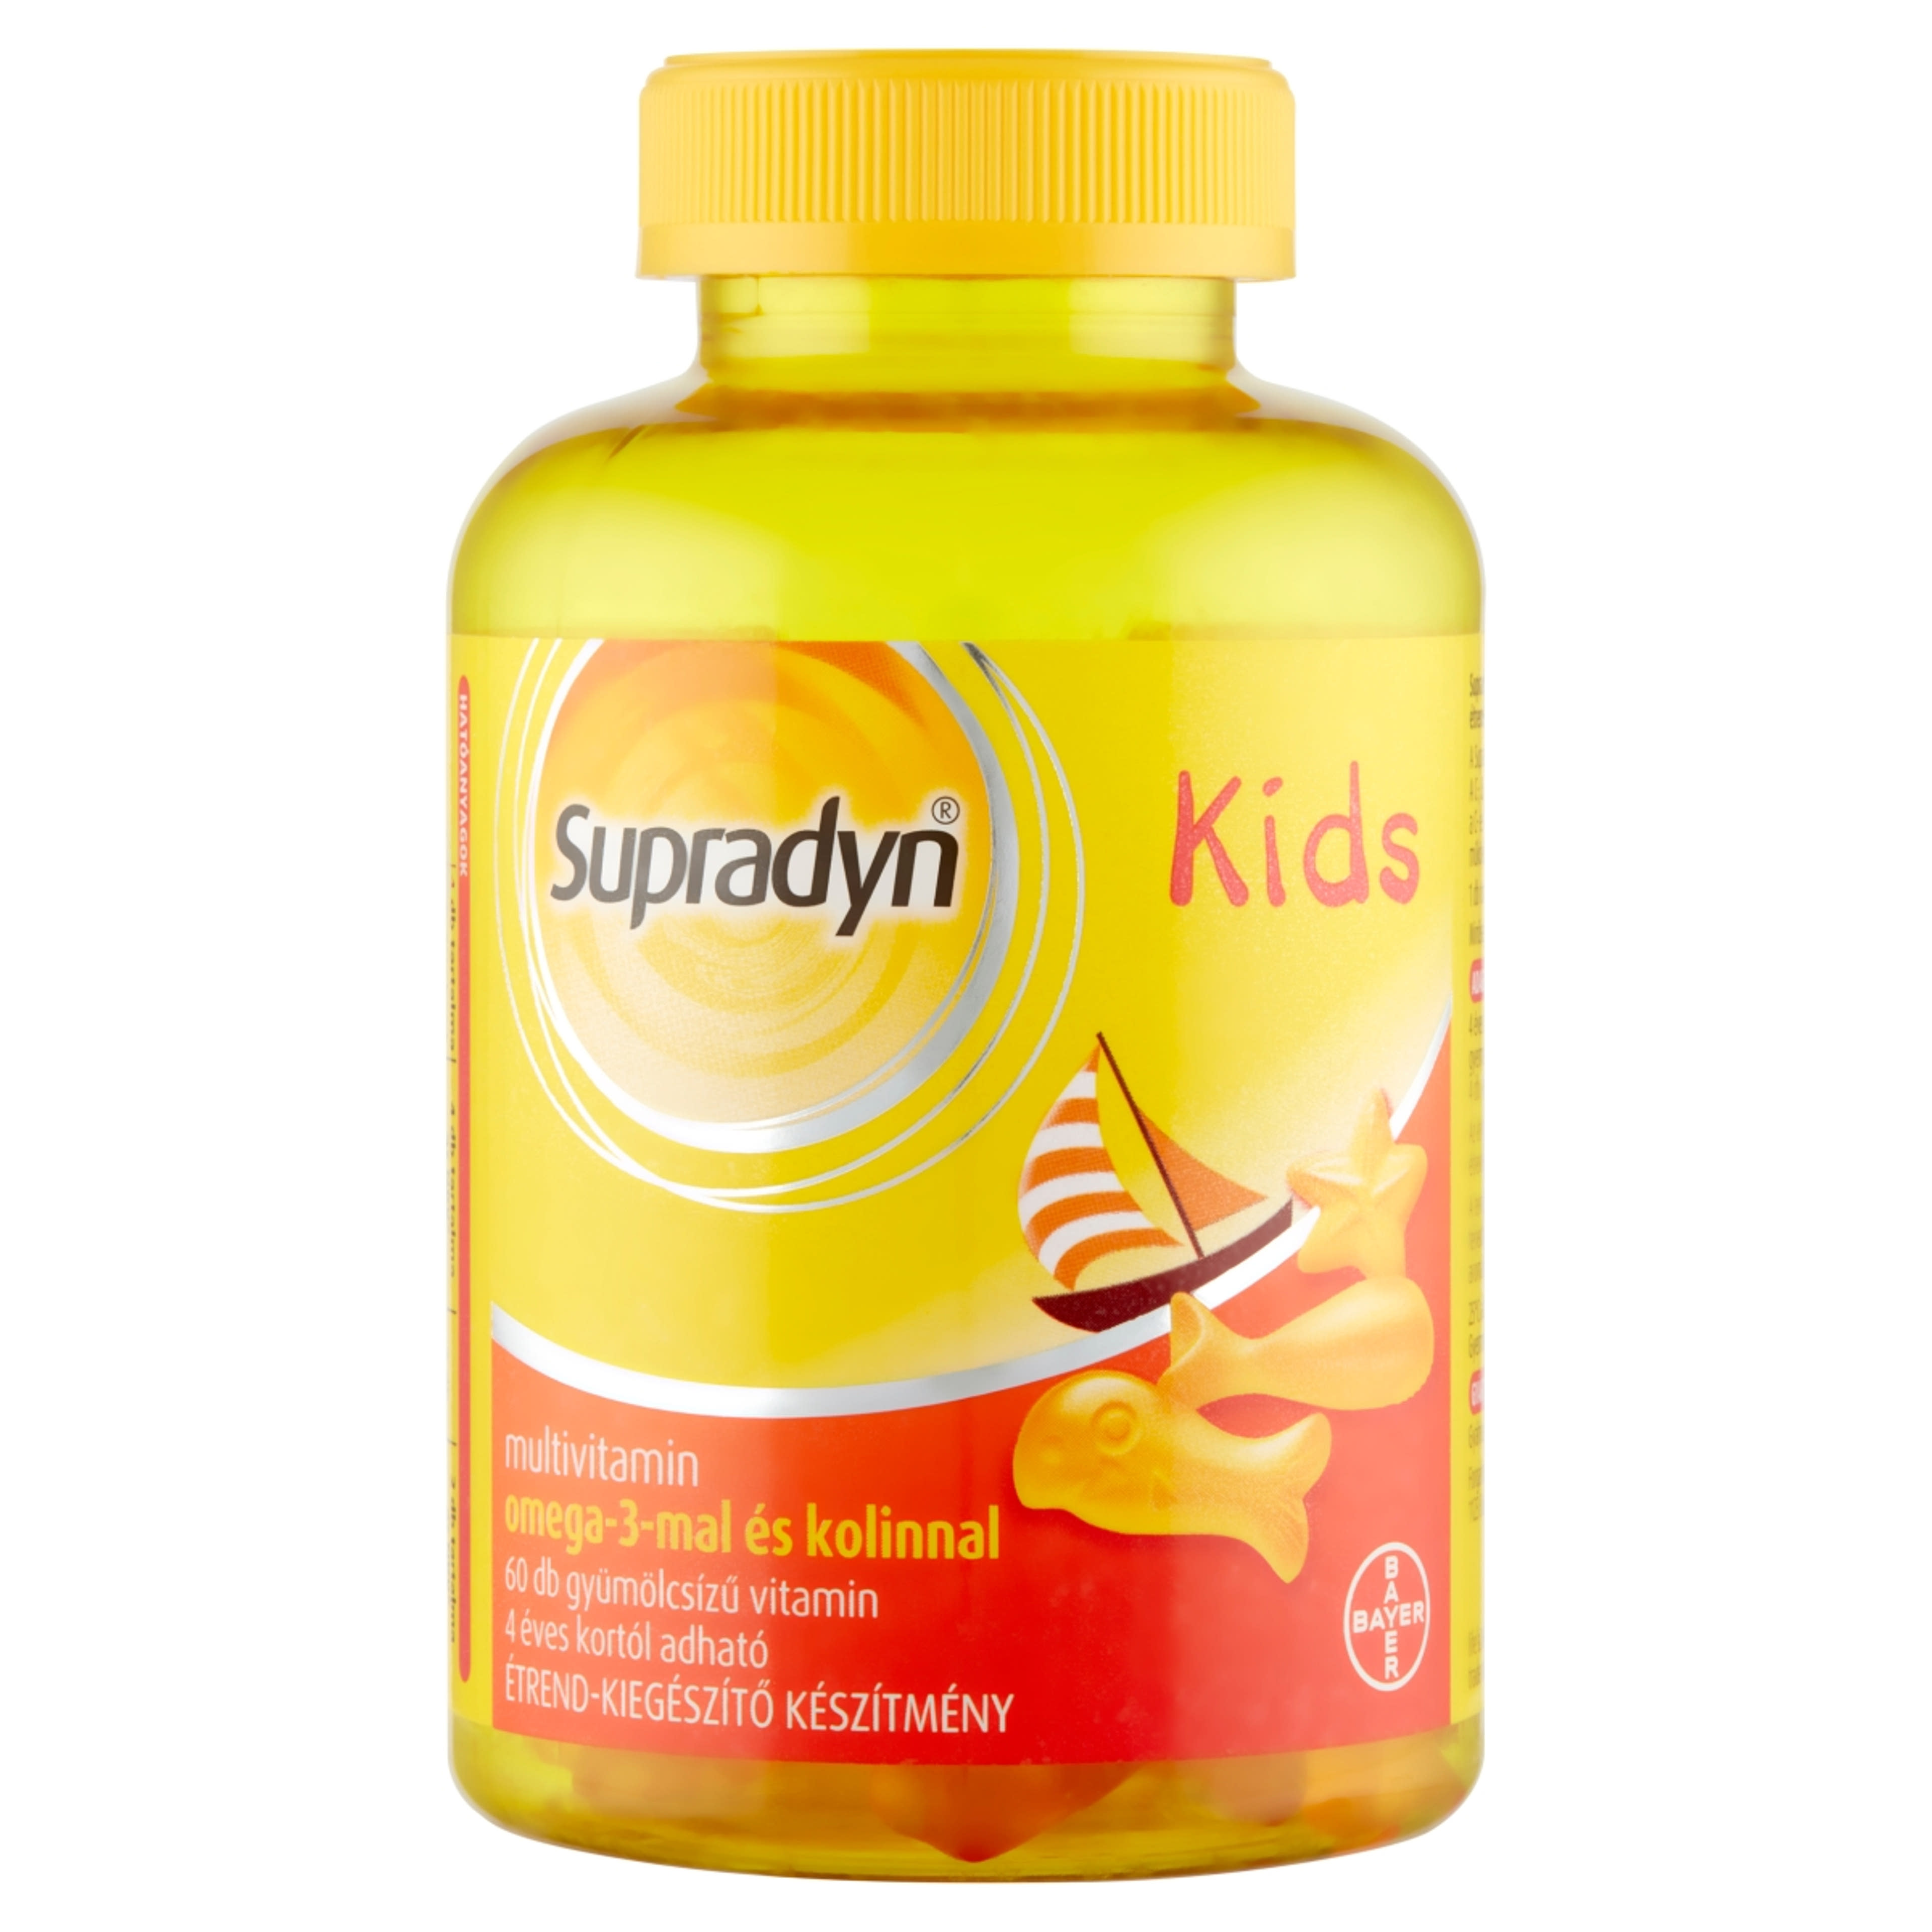 Supradyn Kids gyümölcsízű étrend-kiegészítő multivitamin omega-3-mal és kolinnal - 60 db